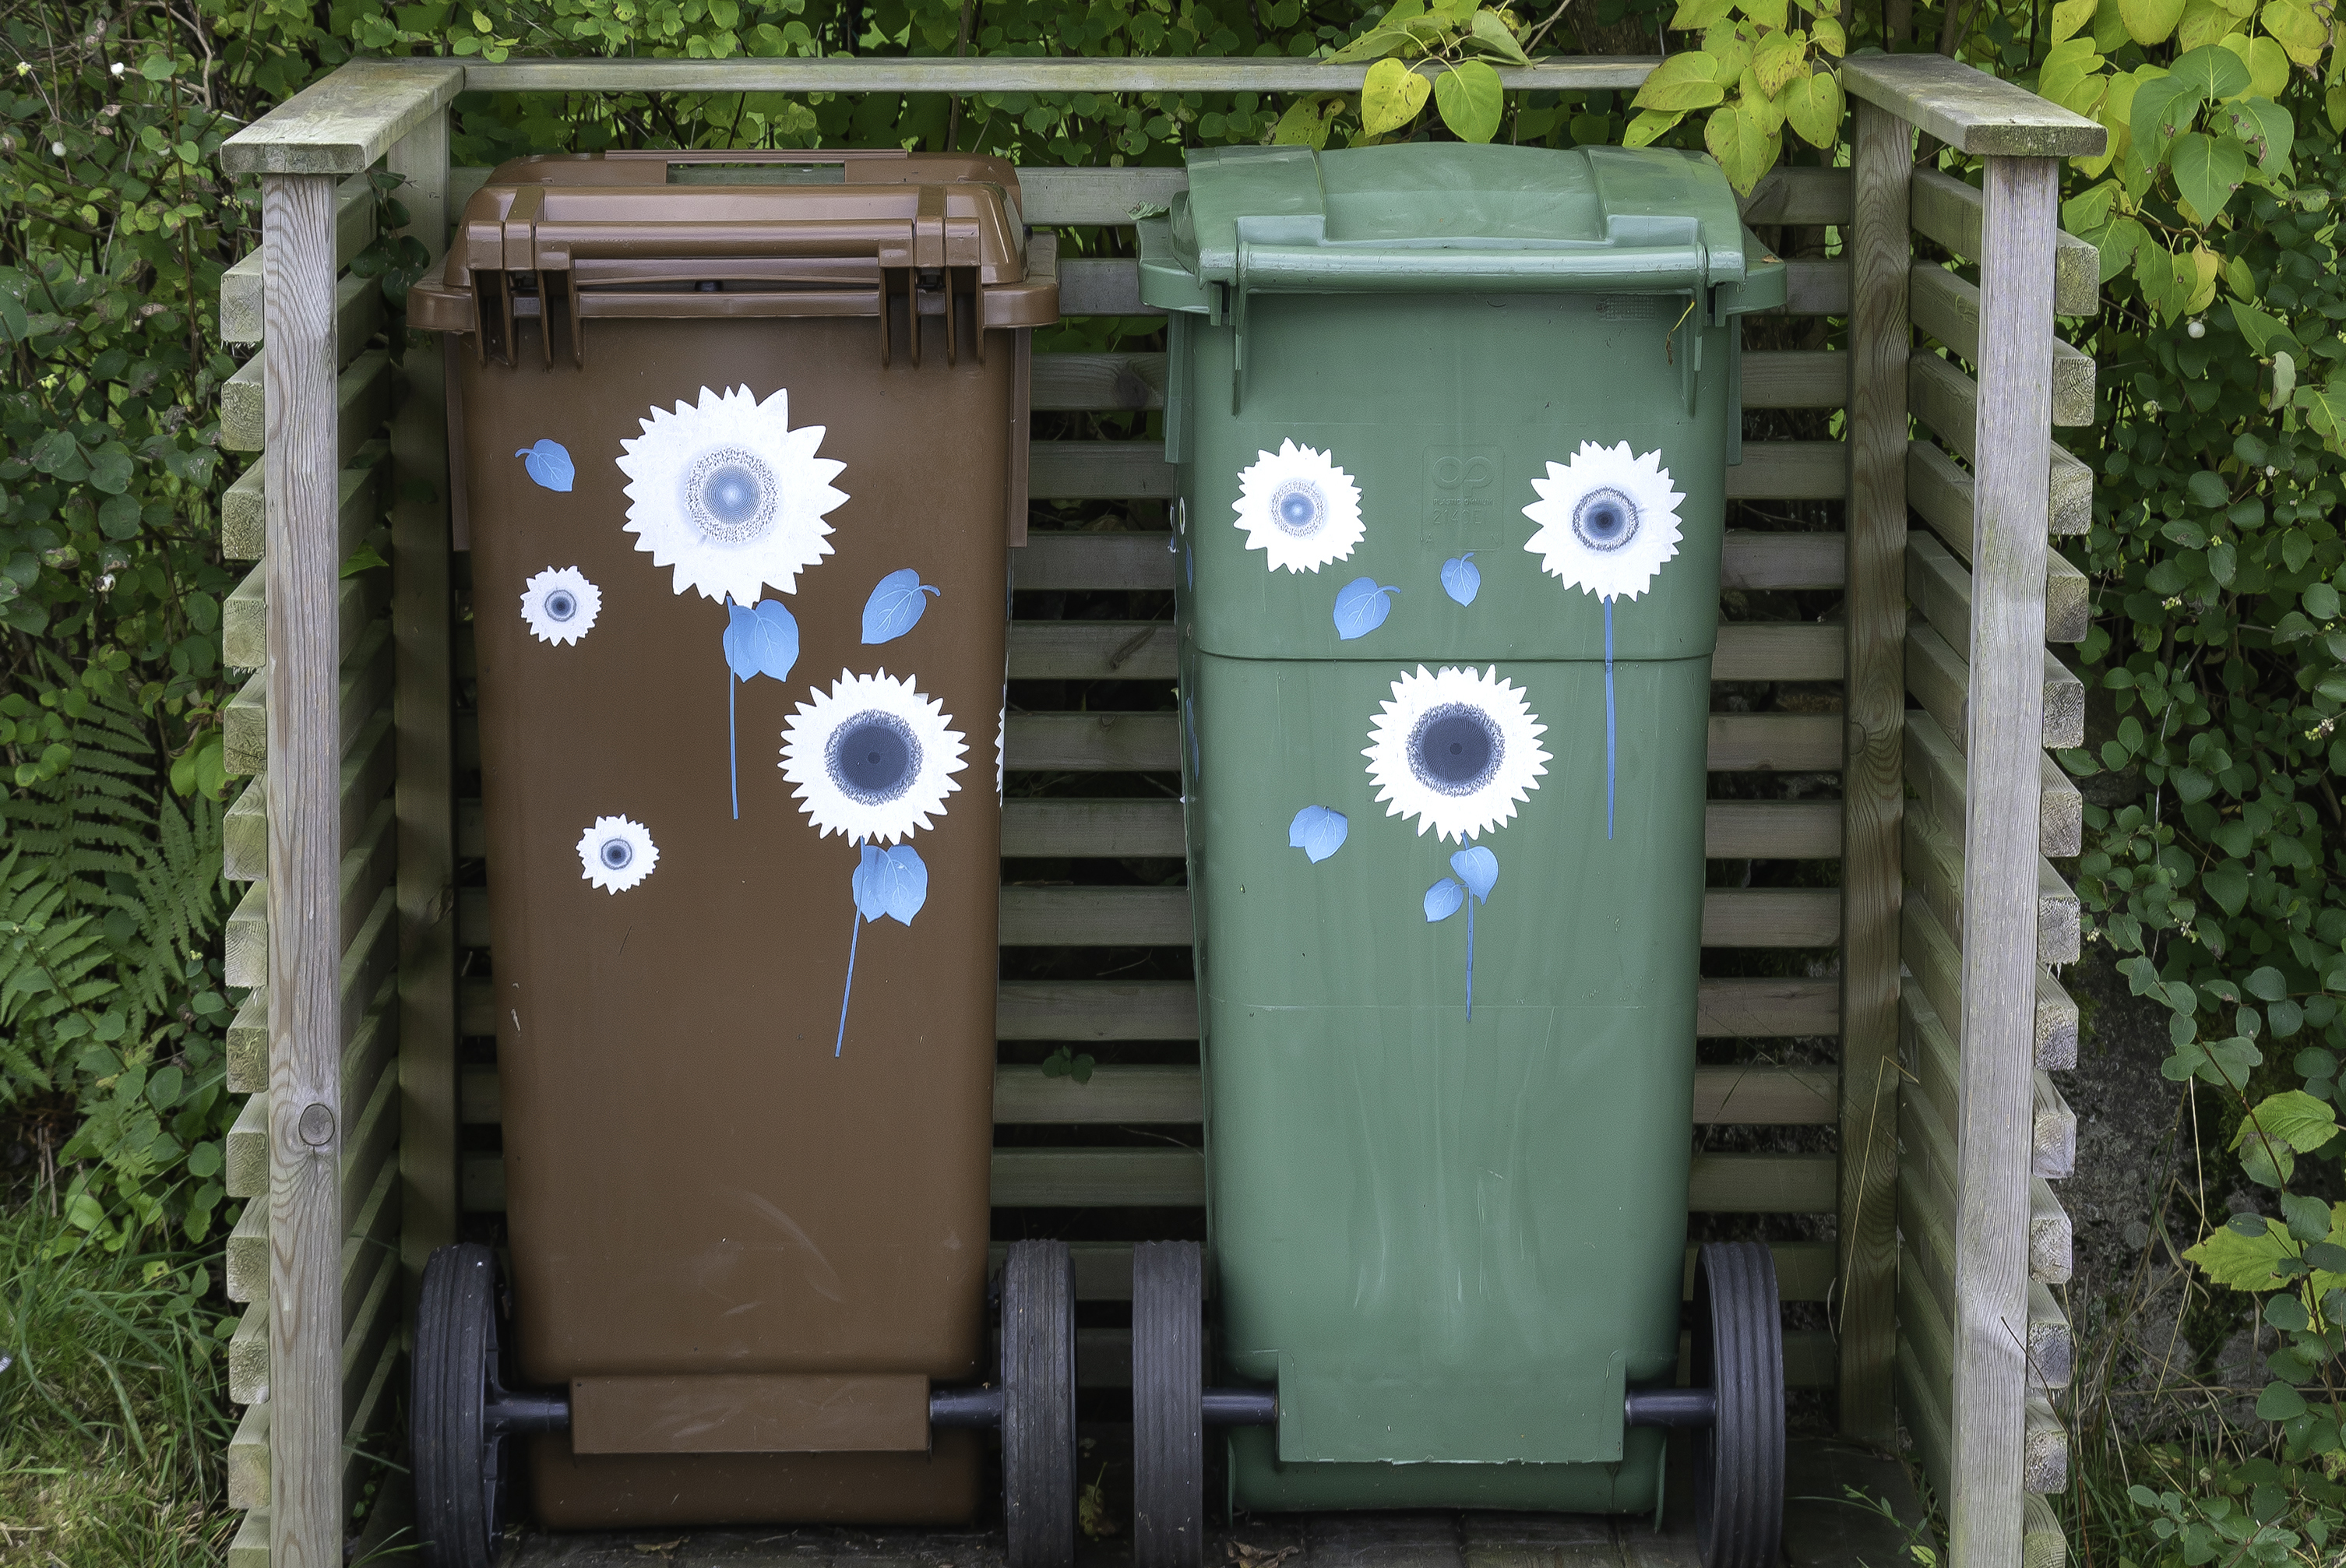 Två soptunnor; en grön och en brunfärgad. Båda står utomhus och har klistermärken i form av blommor på. 